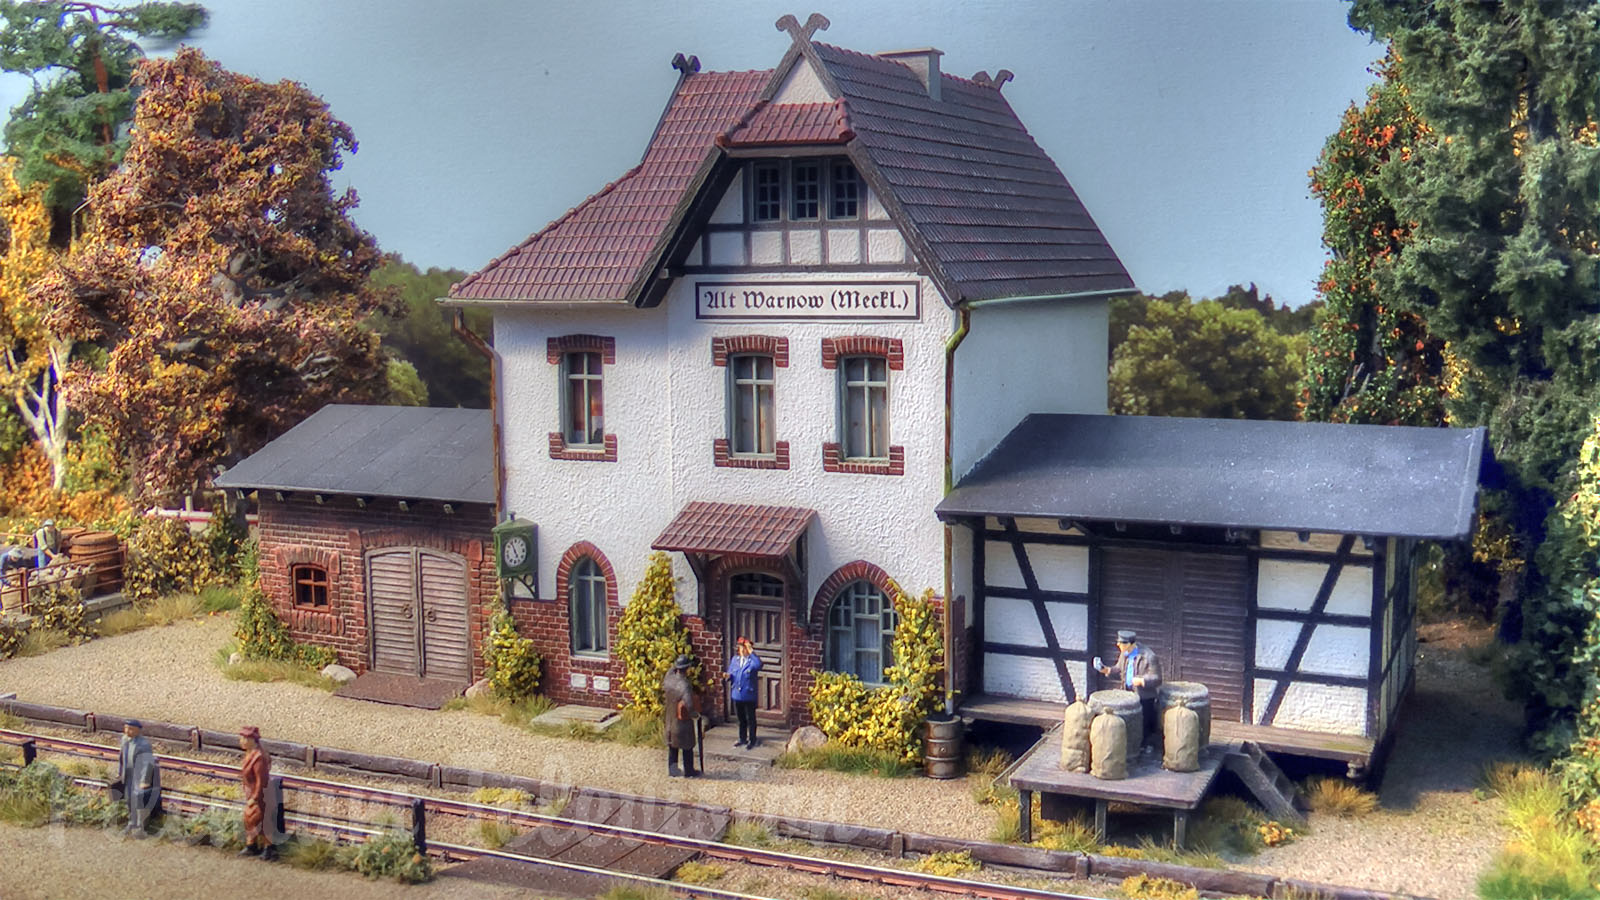 Réseau ferroviaire de la campagne du nord de l’Allemagne - Locomotives et trains à vapeur anciens